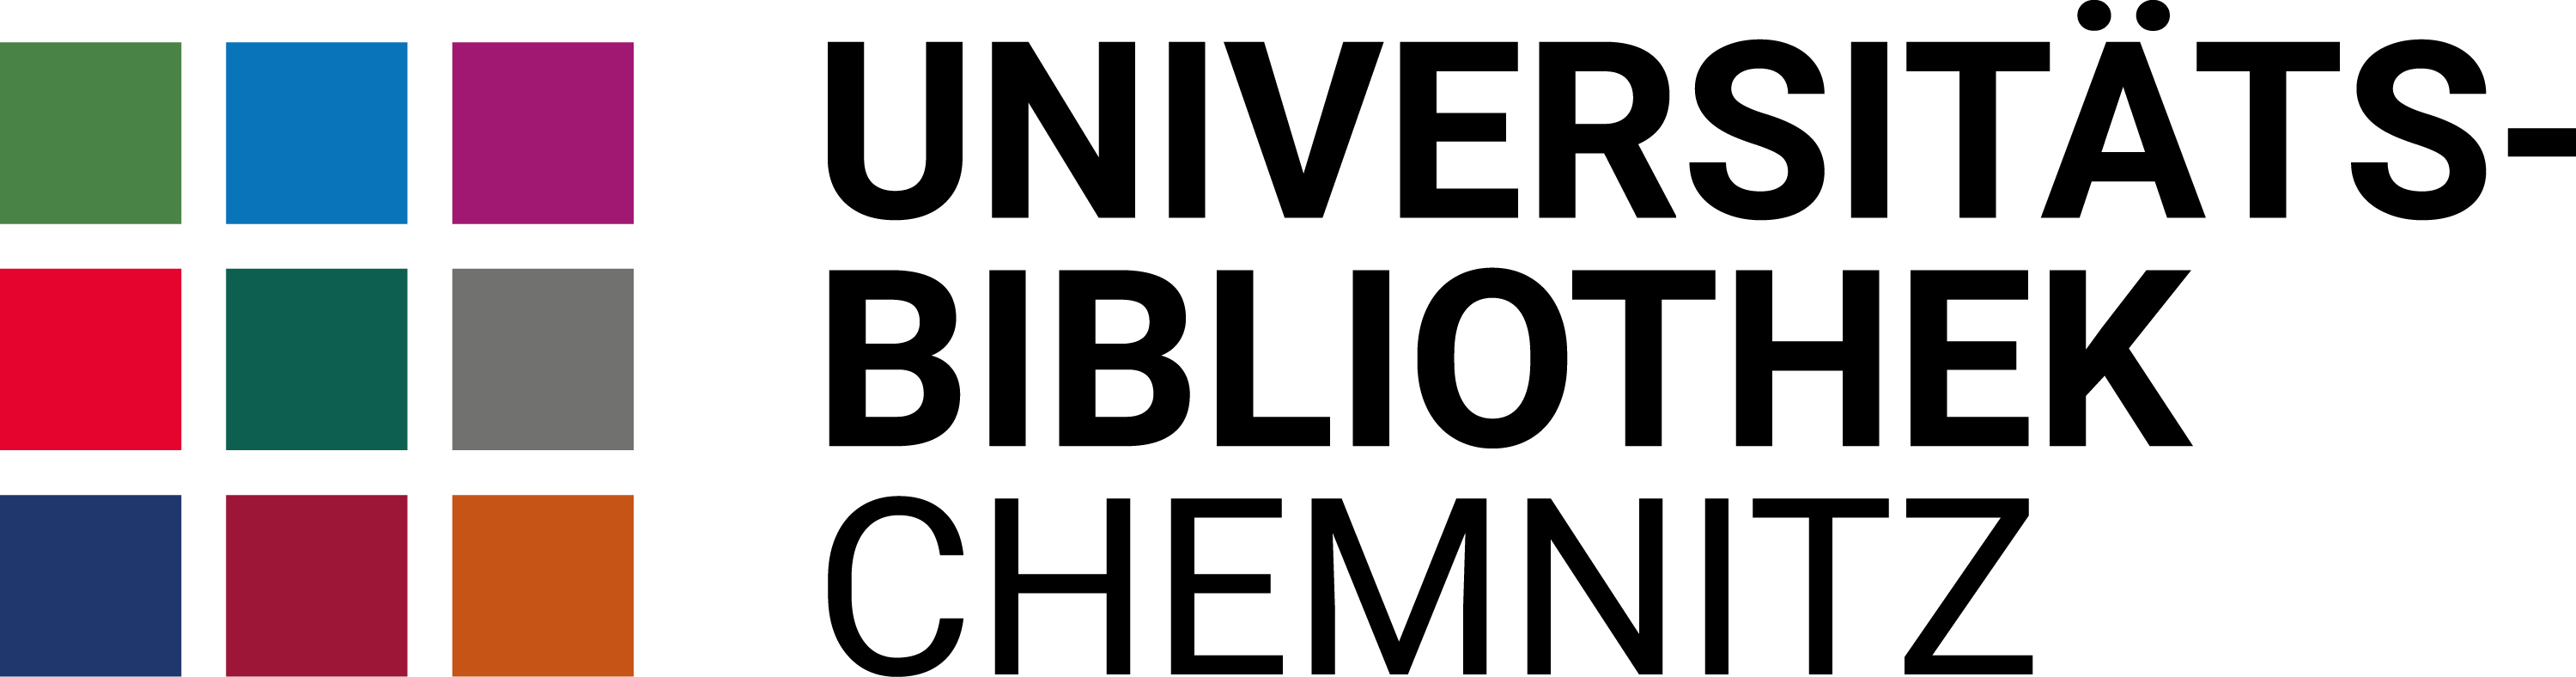 Online-survey of Chemnitz University Library